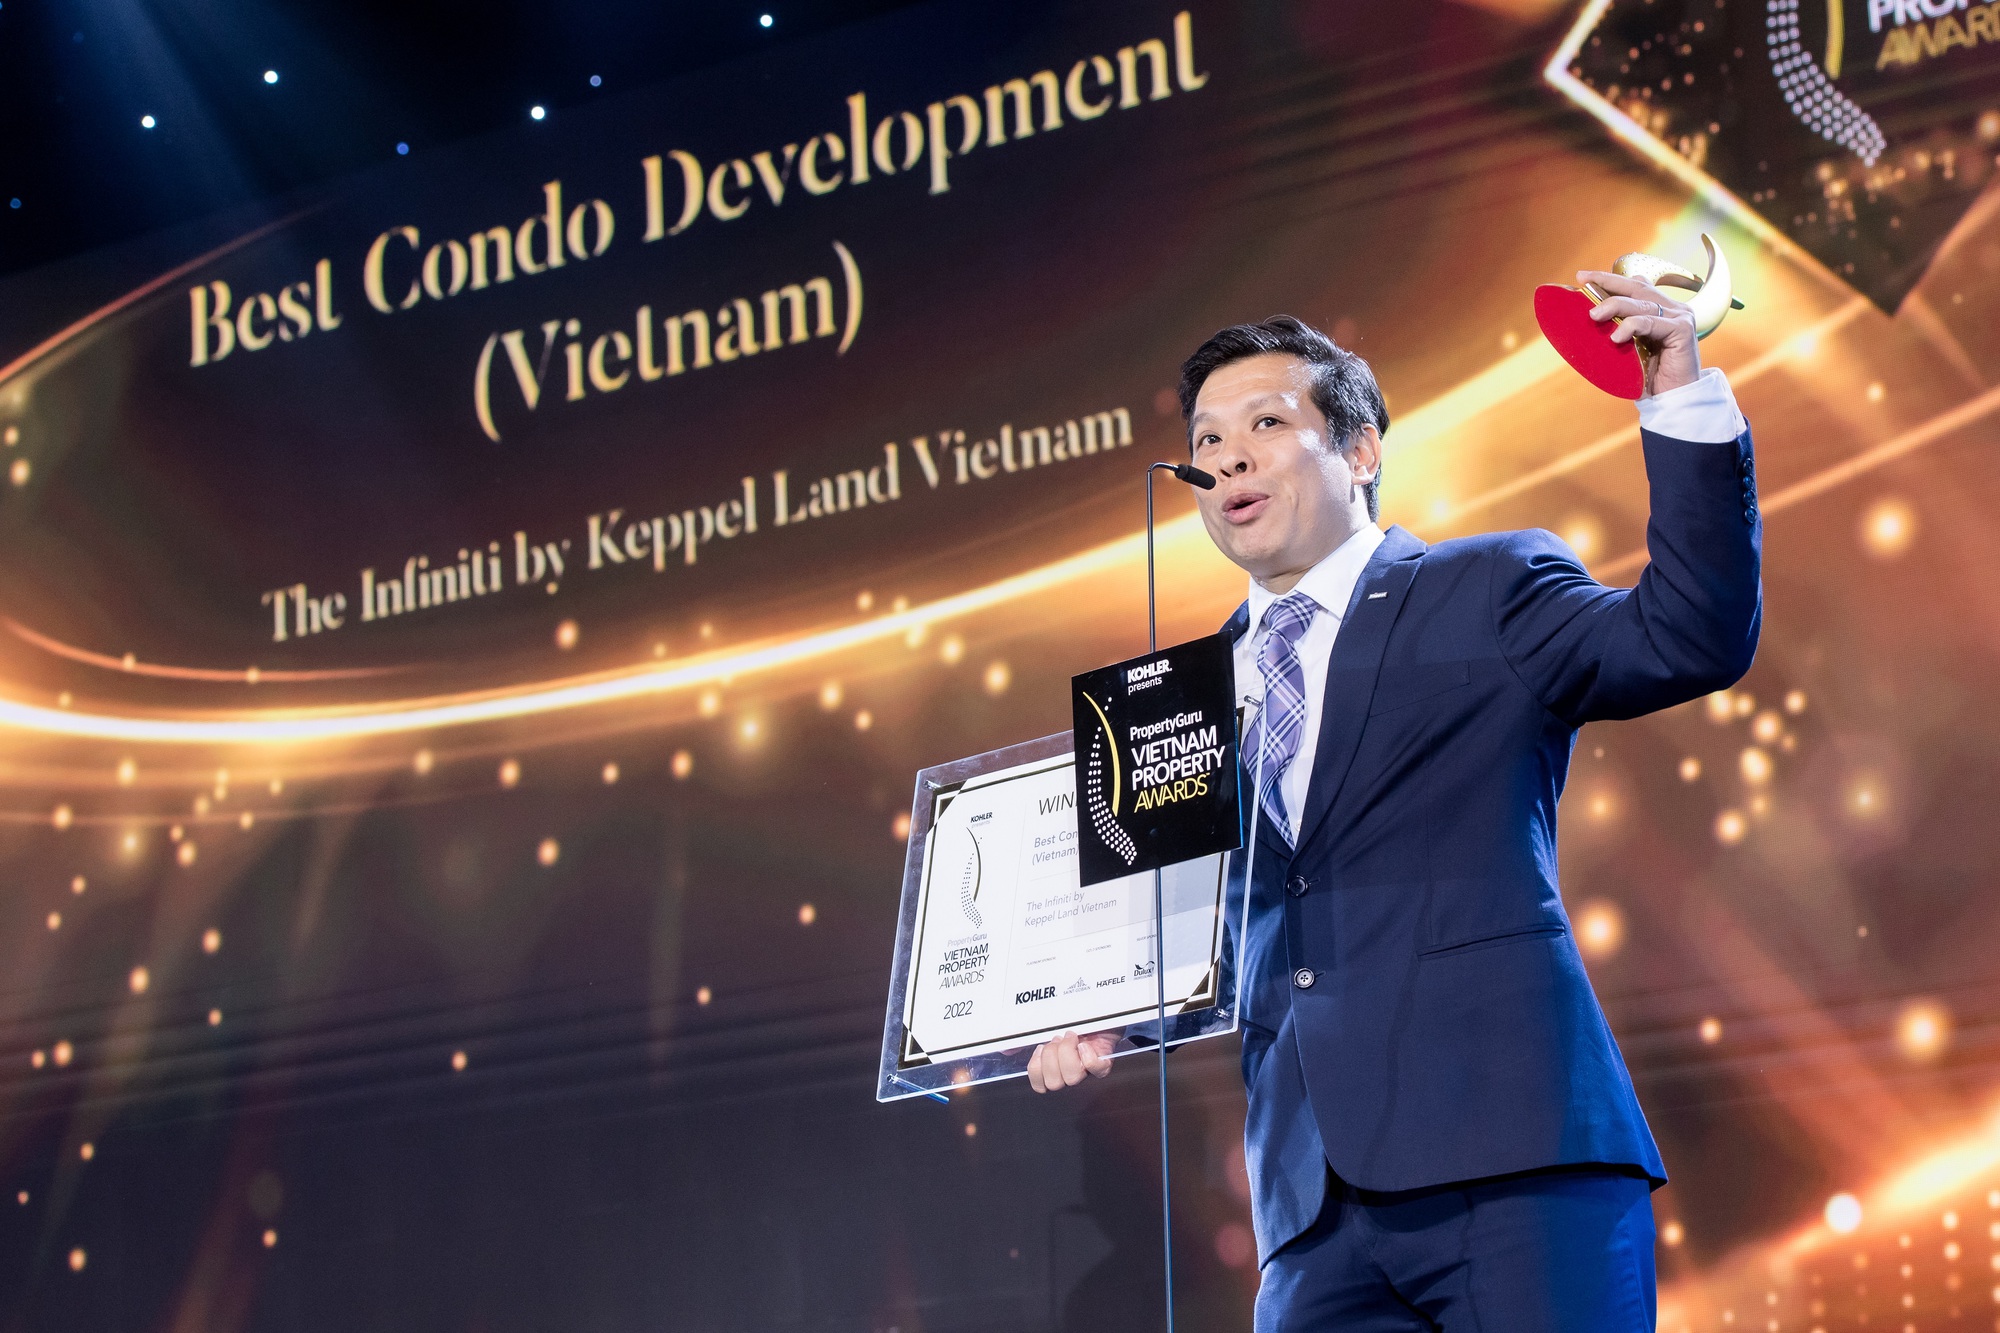 Chủ tịch Keppel Land Việt Nam nhận giải Nhân vật bất động sản của năm - Ảnh 1.